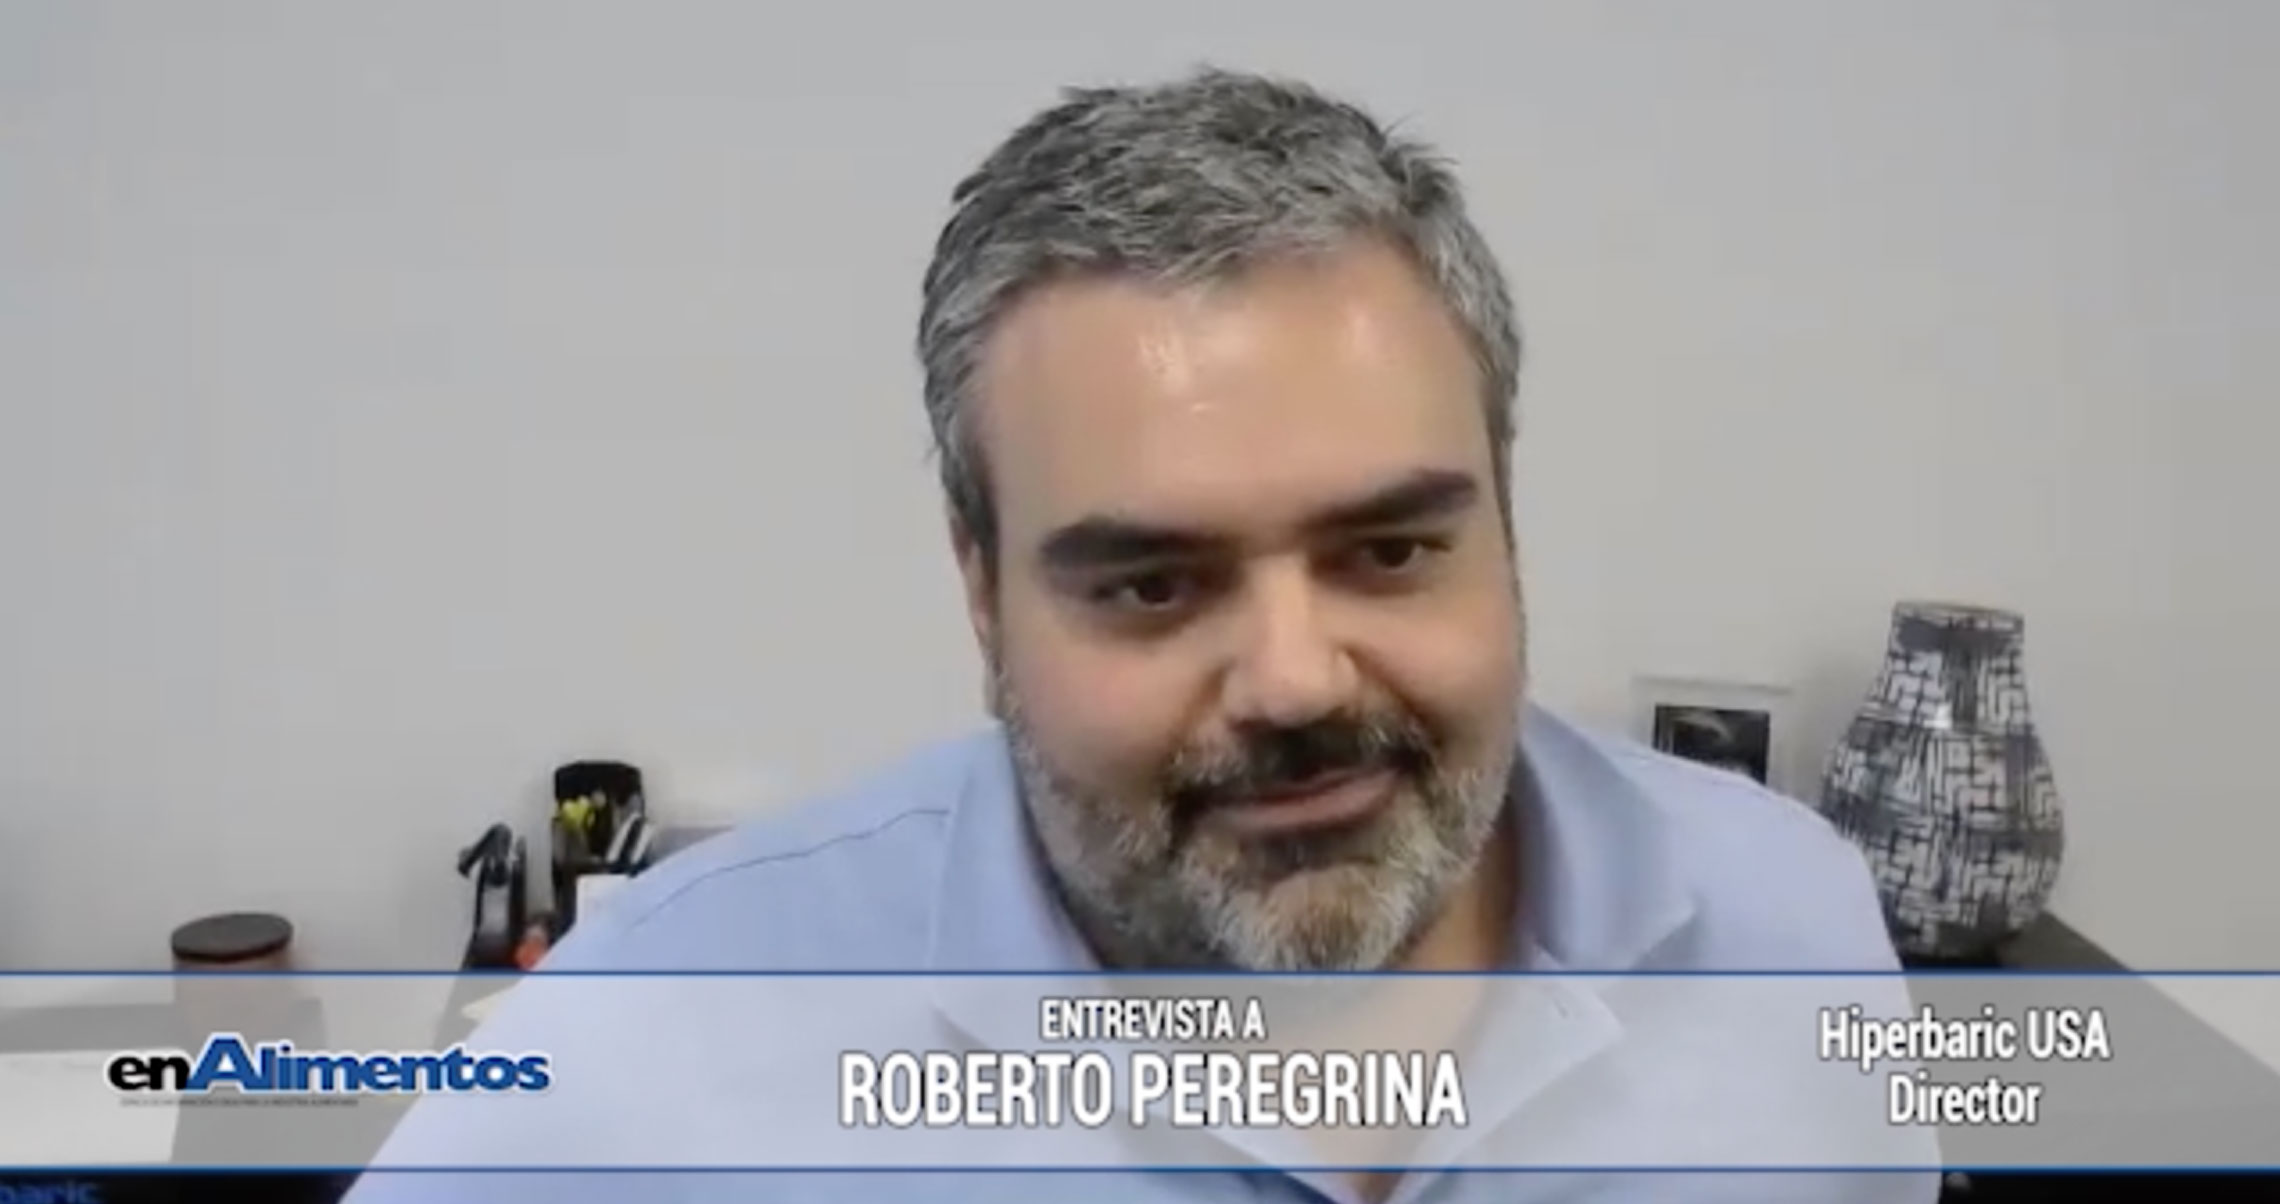 Entrevista a Roberto Peregrina - Director Hiperbaric USA